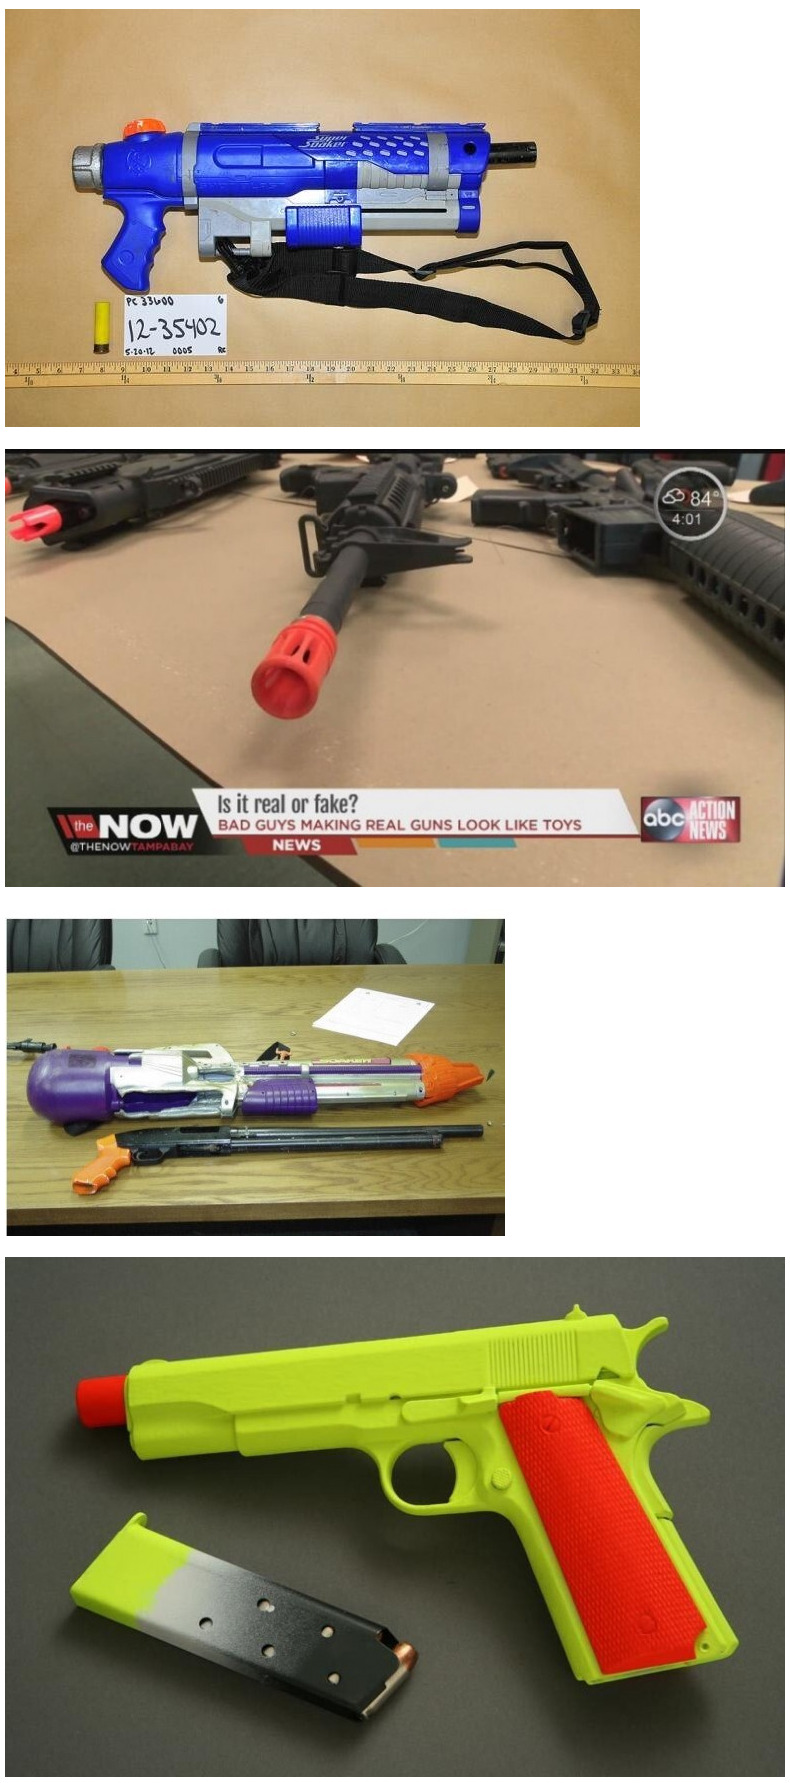 미 당국에 의해 긴급 압수당한 장난감 총기들.jpg